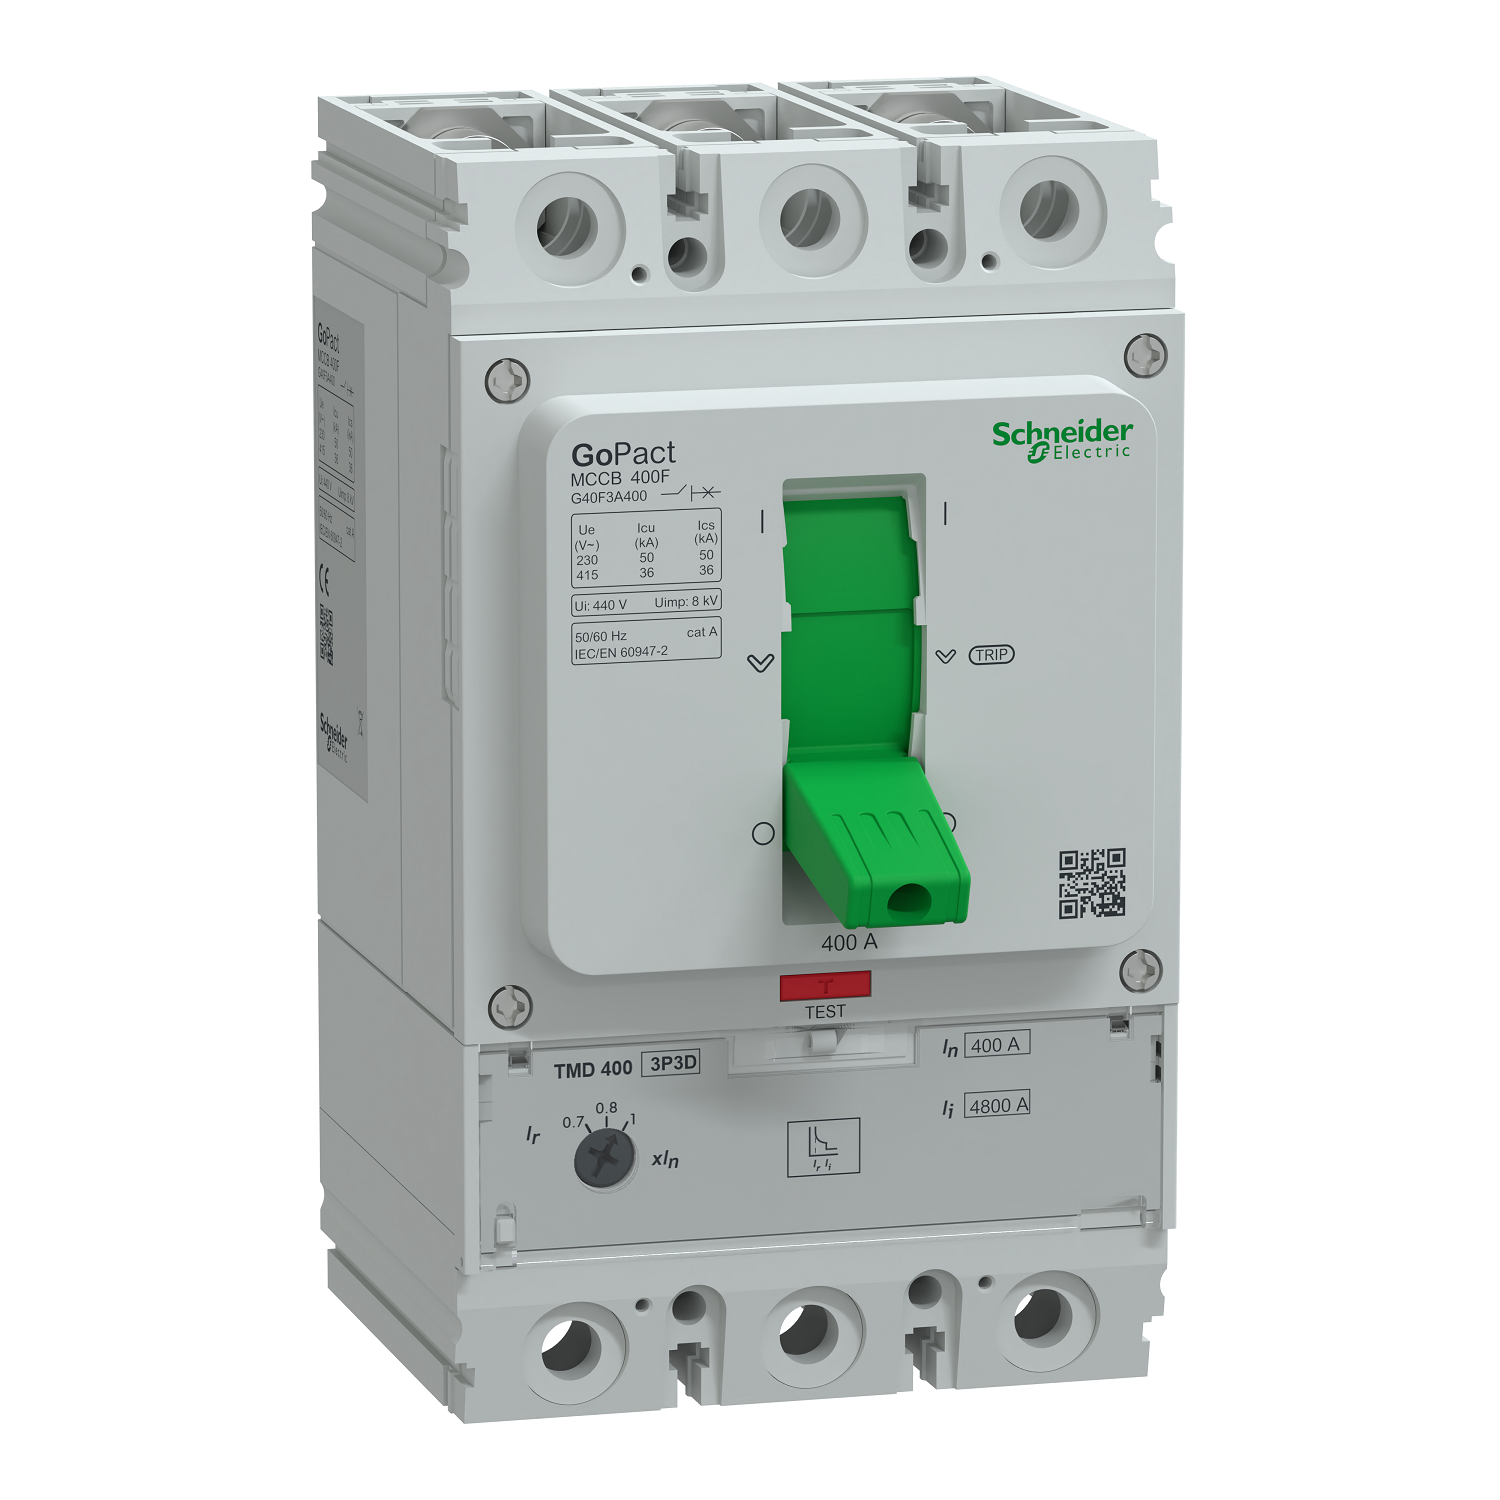 Circuit breaker, GoPact MCCB 400, 3 poles, 36kA at 415VAC, 400A rating, TMD trip unit, adjustable thermal protection